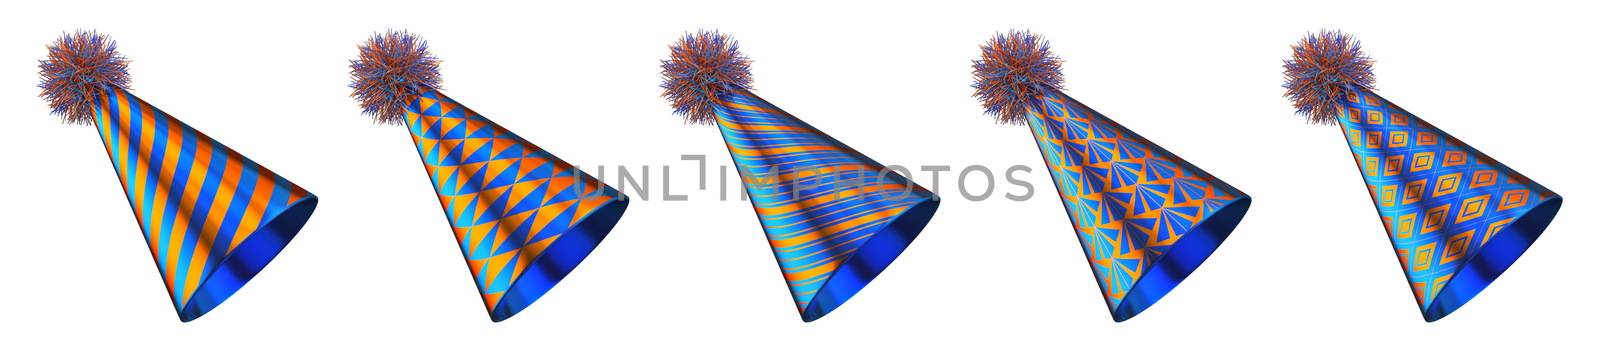 Five blue orange party hats 3D by djmilic